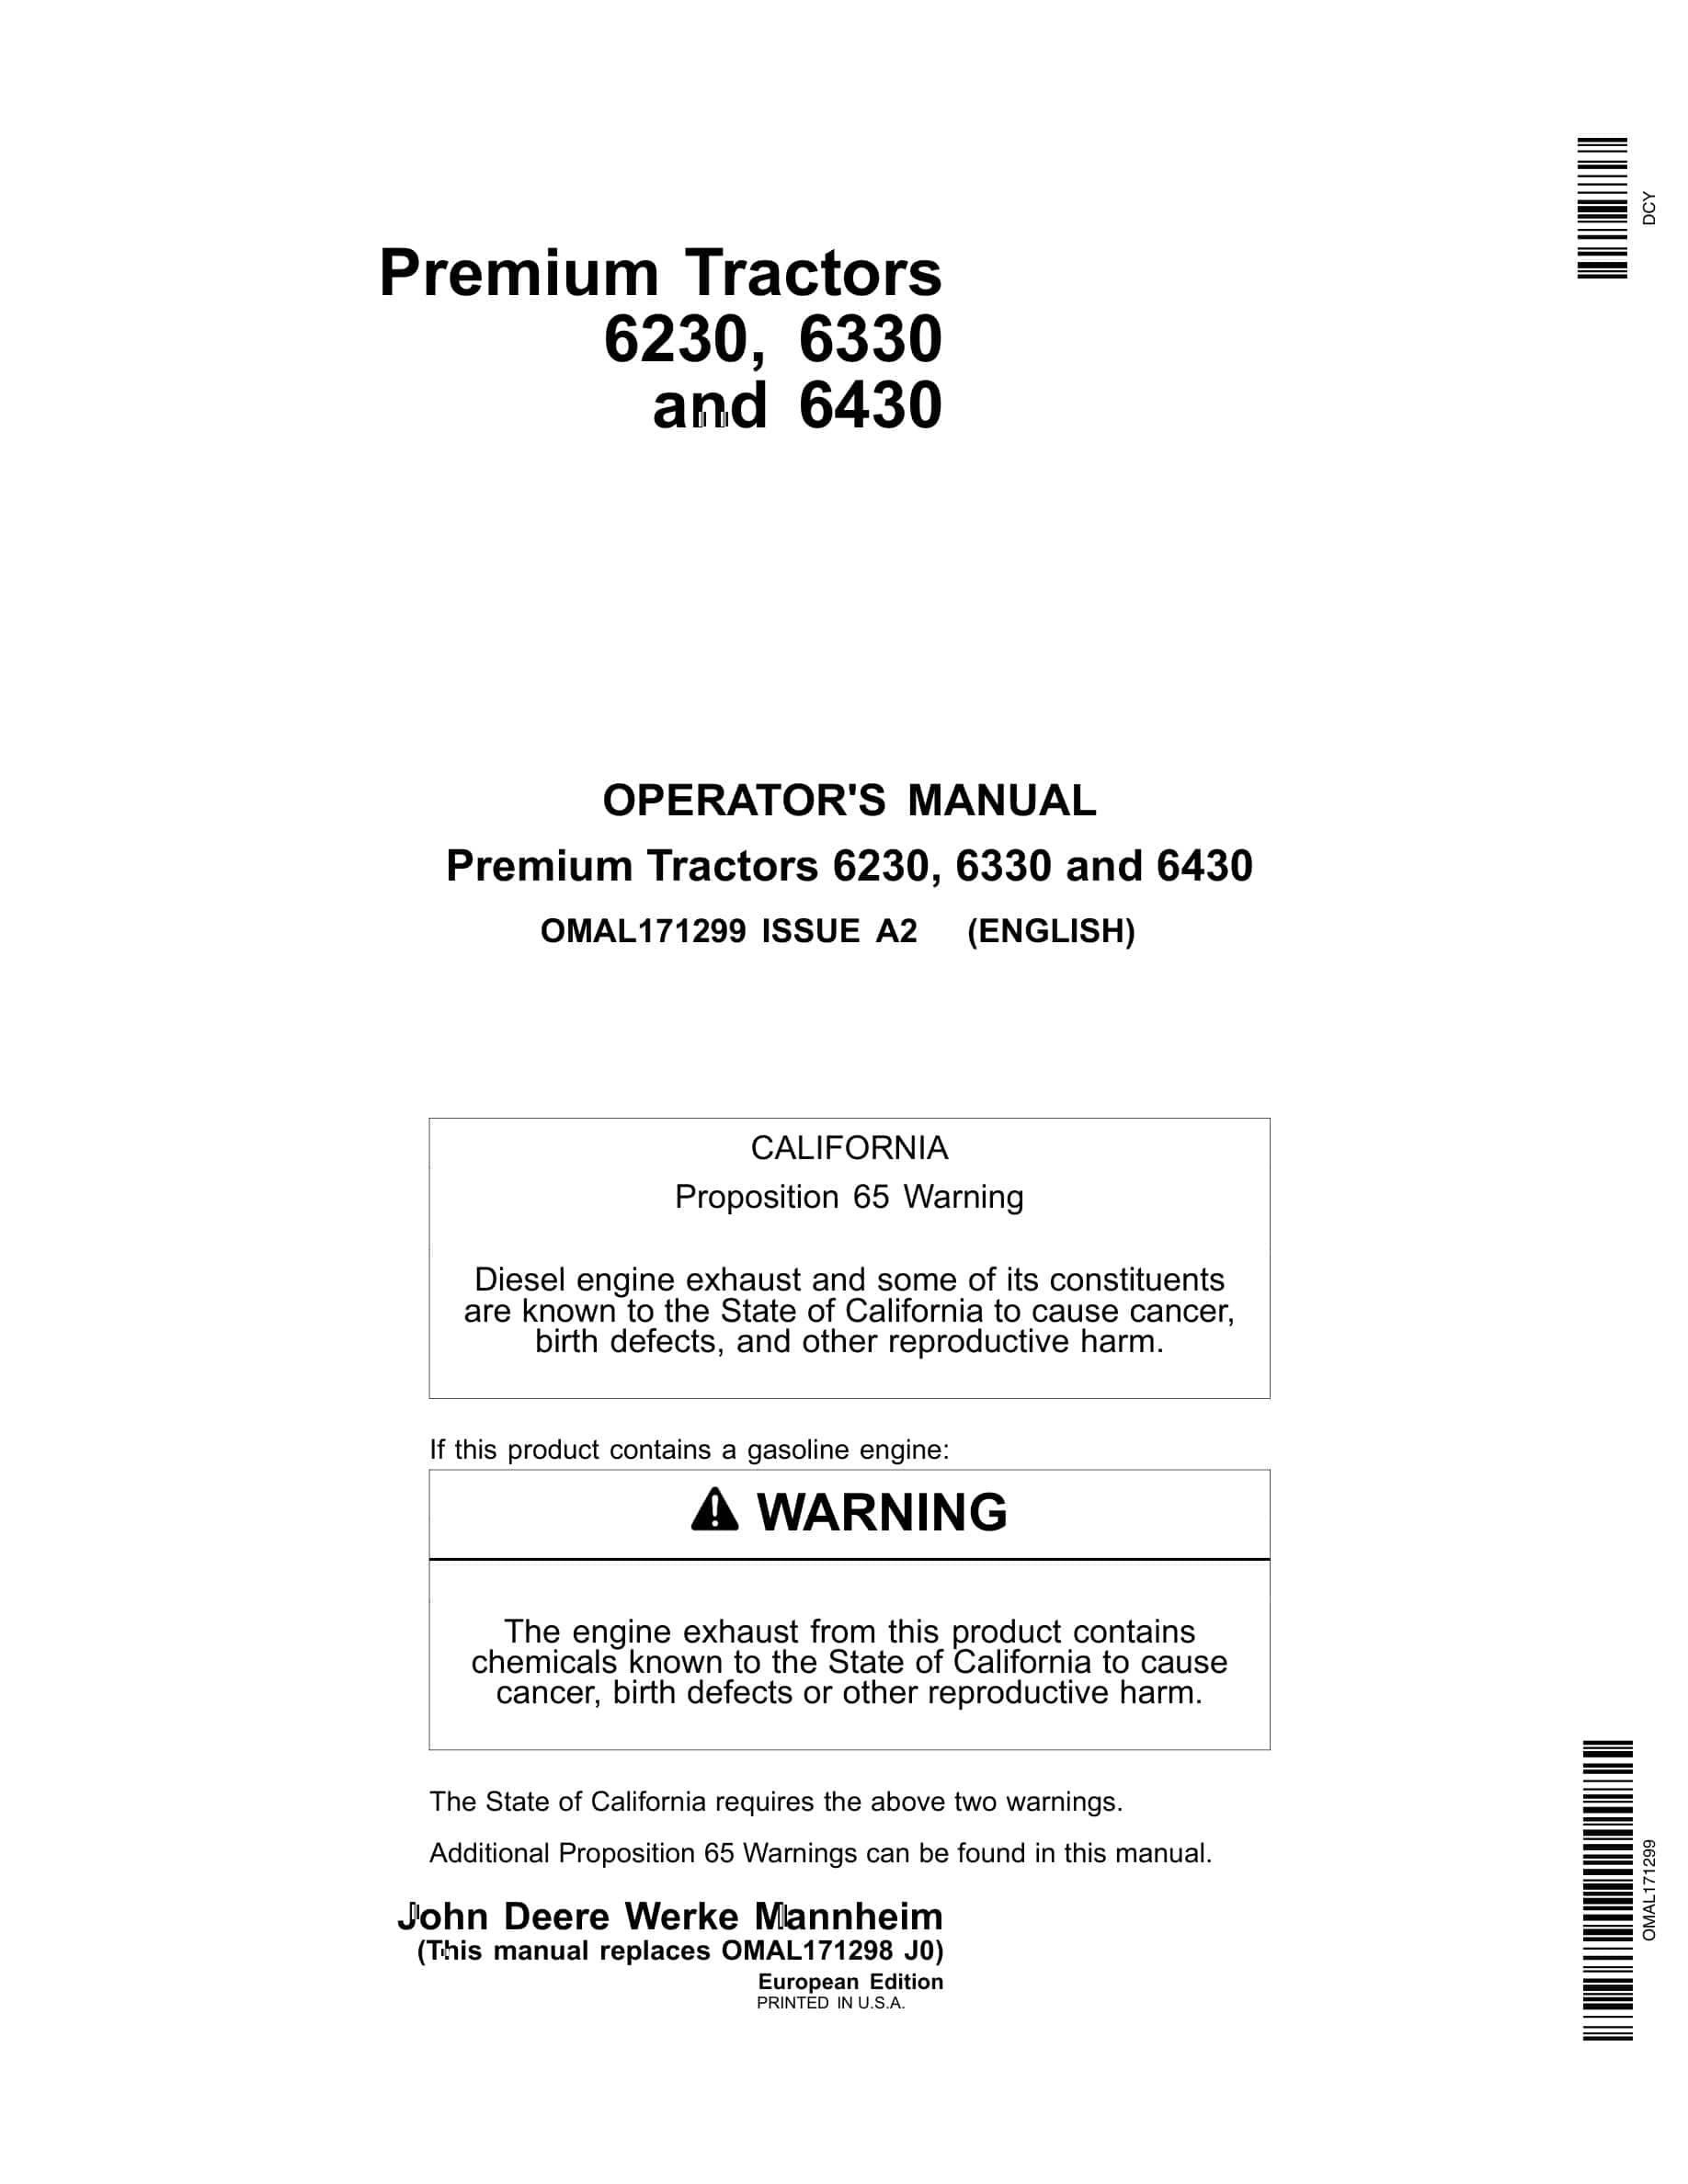 John Deere 6230, 6330 And 6430 Premium Tractors Operator Manuals OMAL171299-1